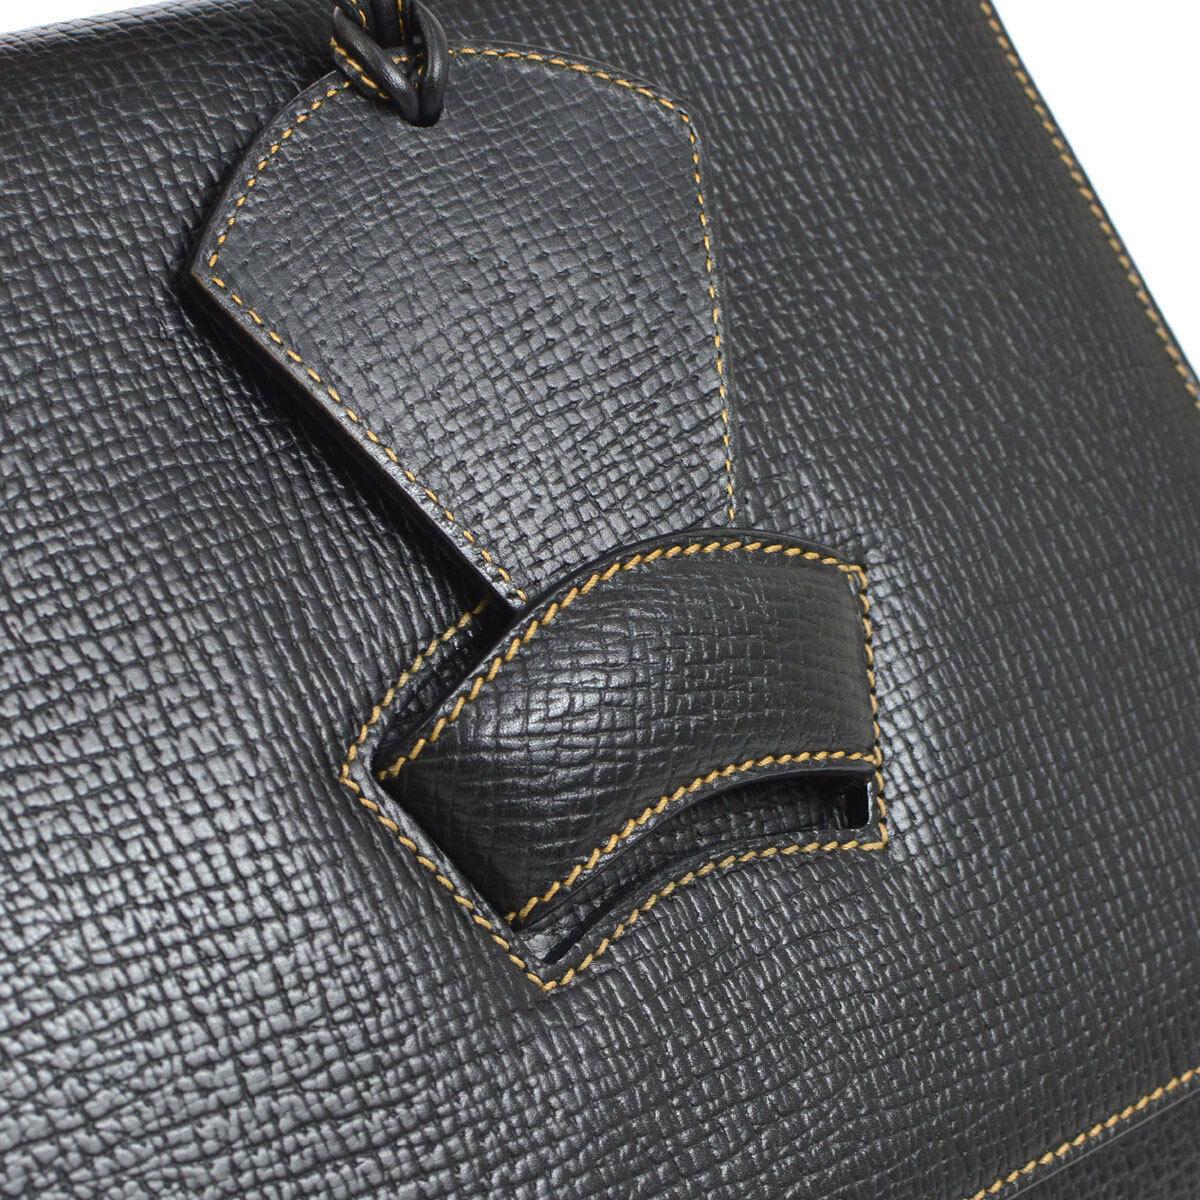 Loewe Black Leather Slip Buckle Kelly Style Top Handle Satchel Shoulder Bag

Leather
Suede lining
Slip buckle closure 
Made in Spain
Handle drop 3.5